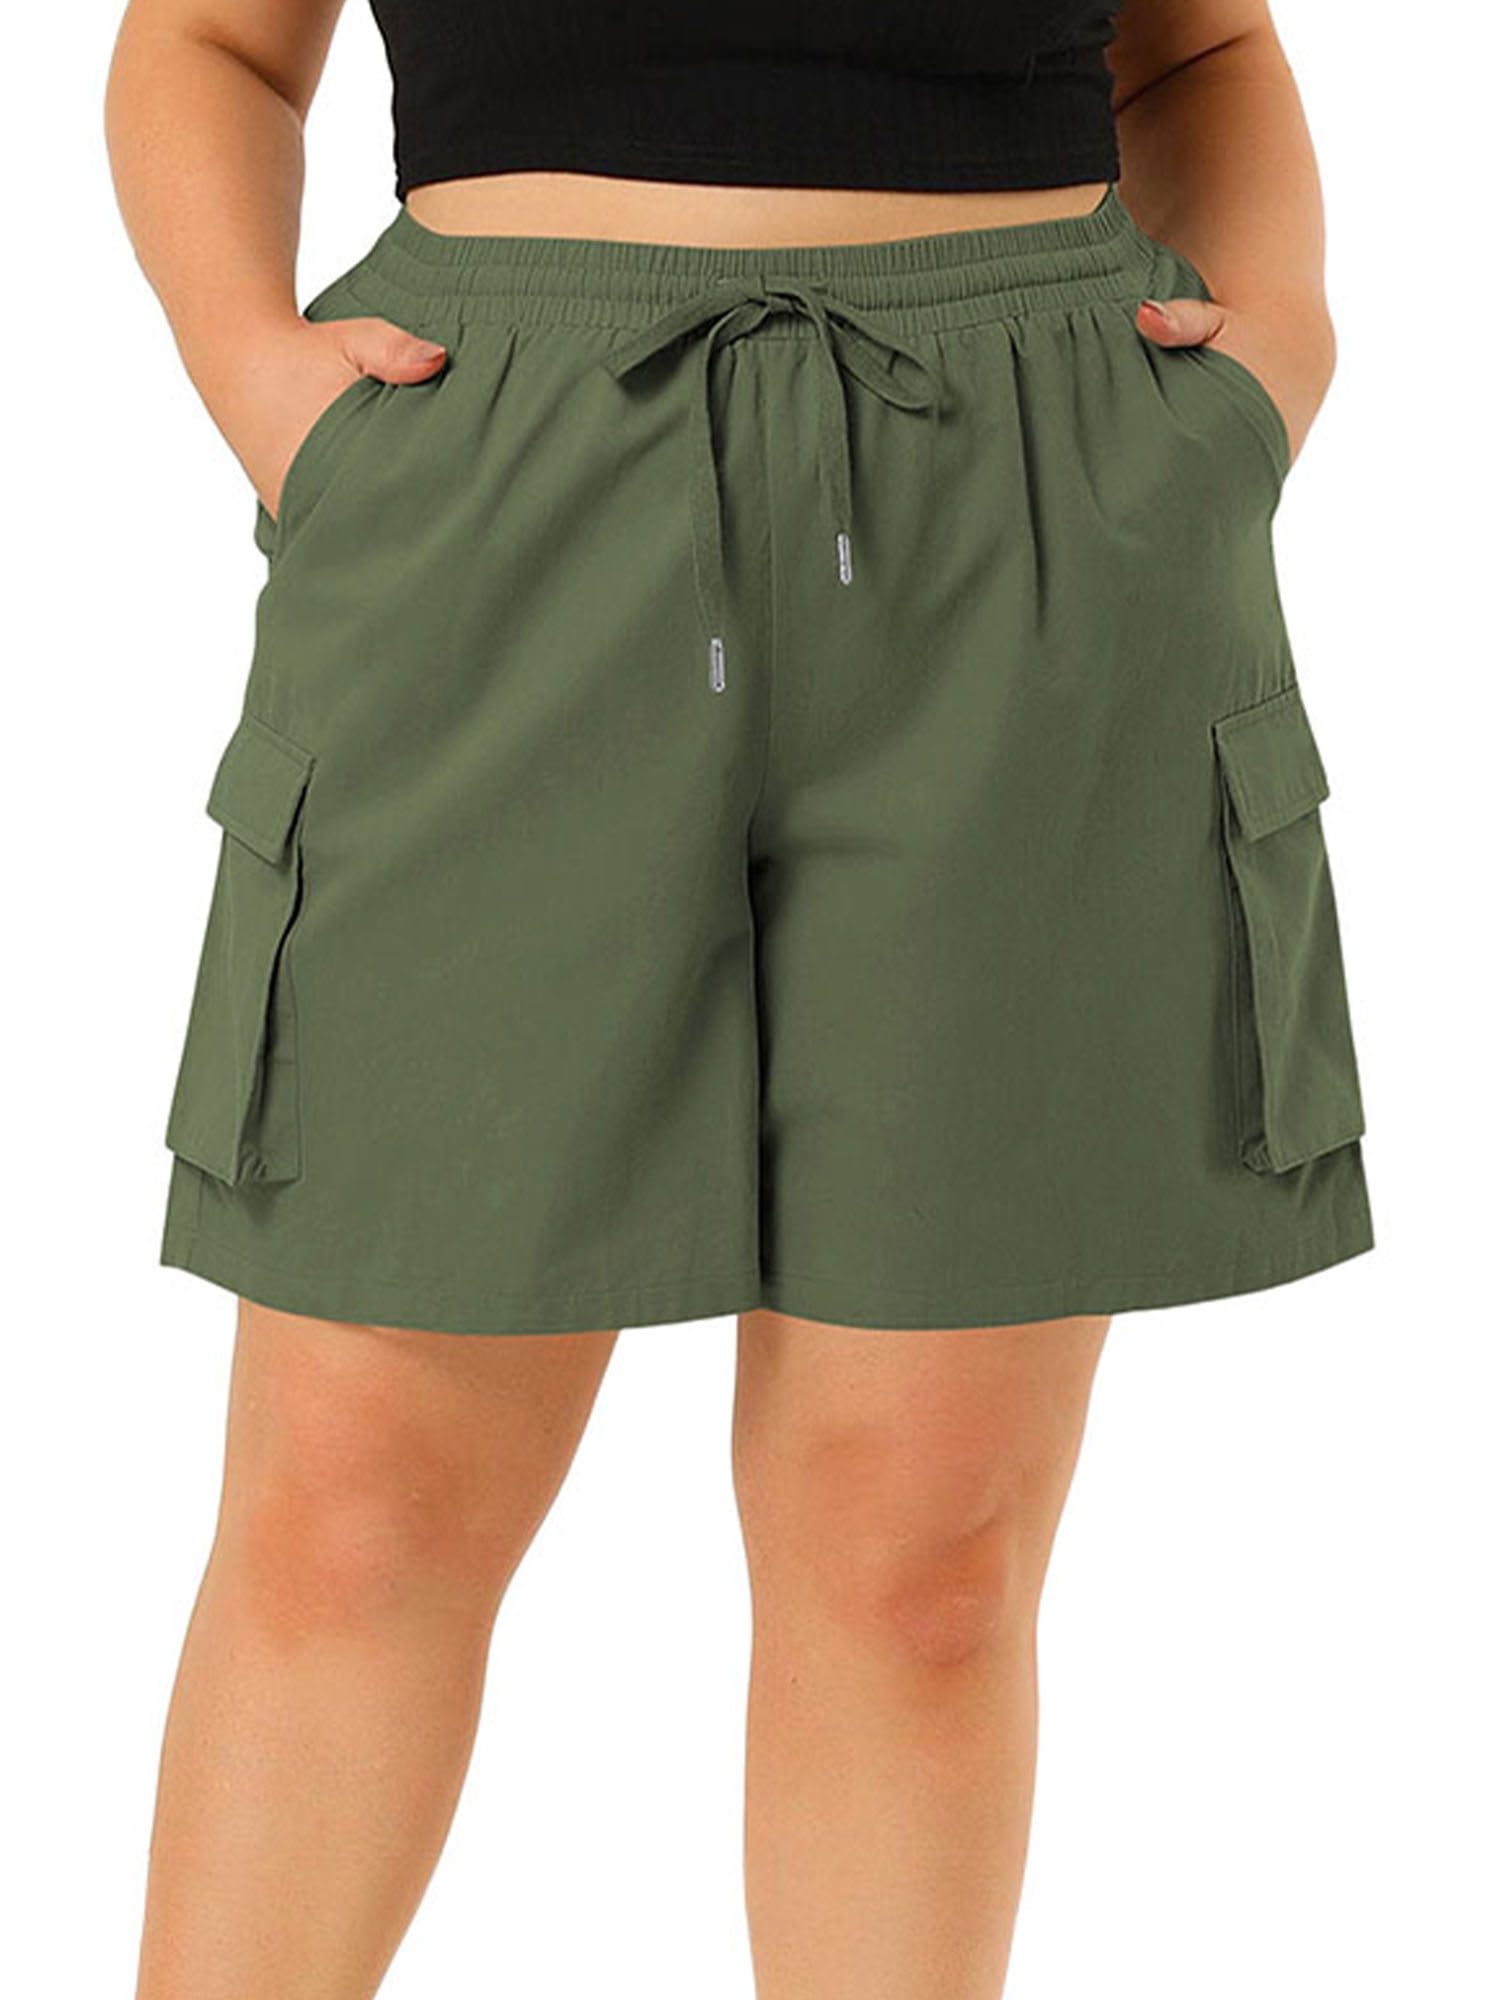 Capreze Plus Size Women Cargo Shorts Summer Casual Loose